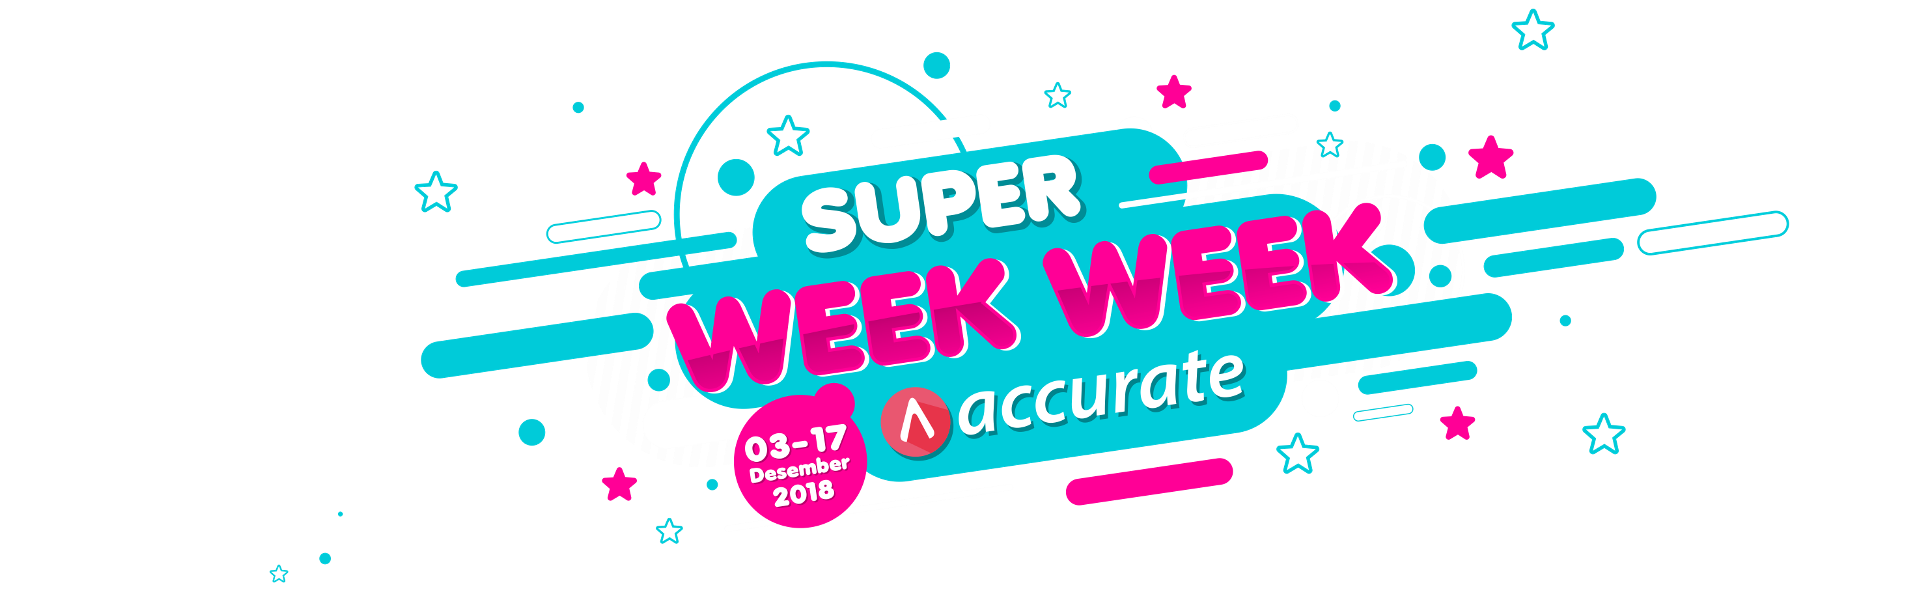 promo accurate online week week